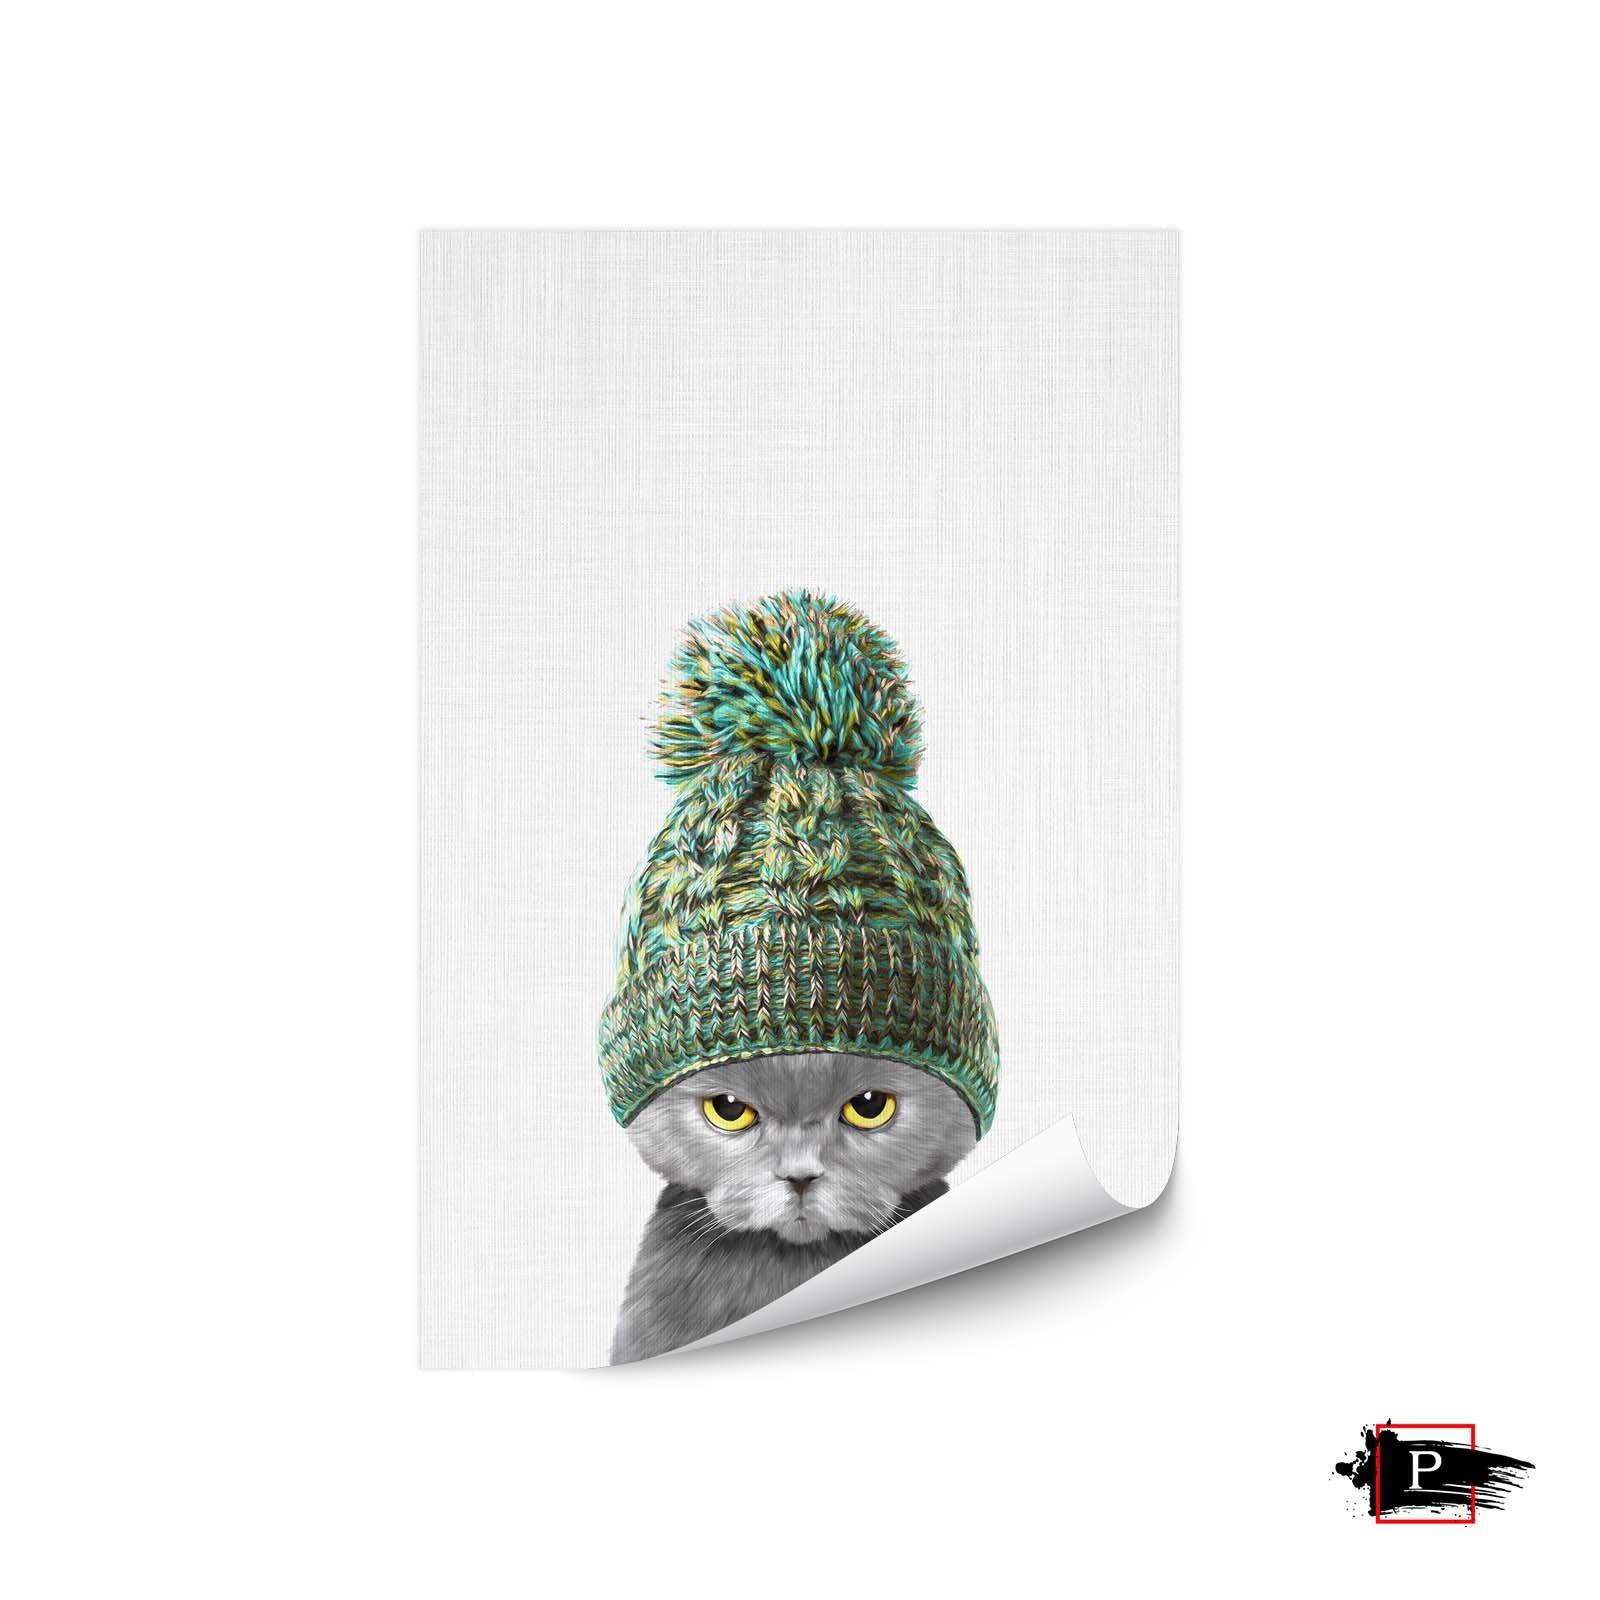 Kitten Wearing a Hat